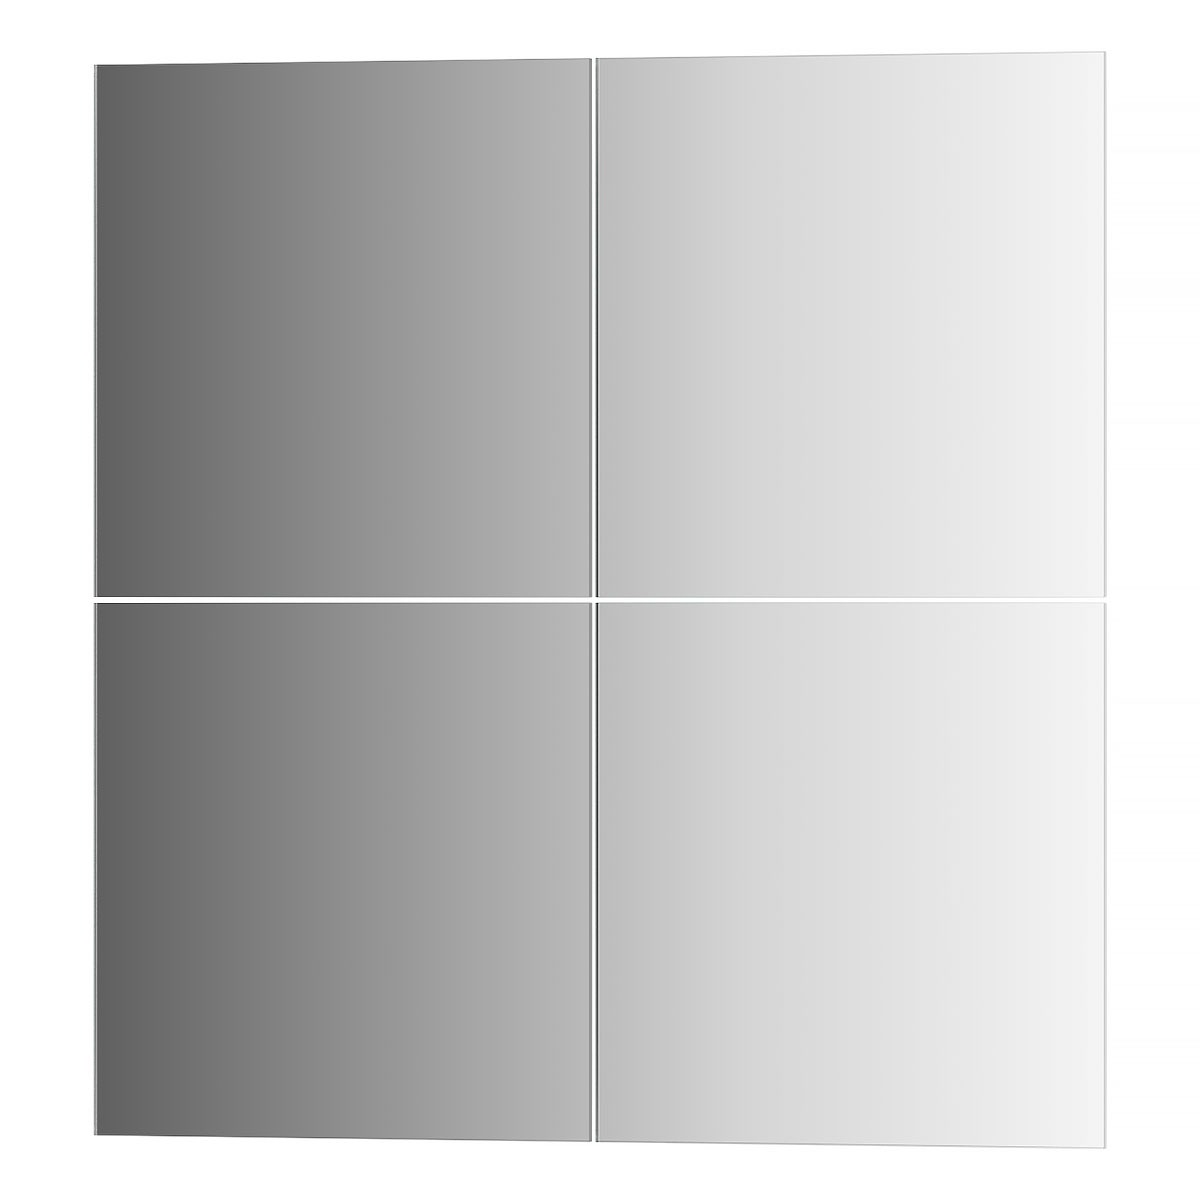 Зеркальная плитка Evoform со шлифованной кромкой - комплект 4 шт квадрат 20х20 см; серебро